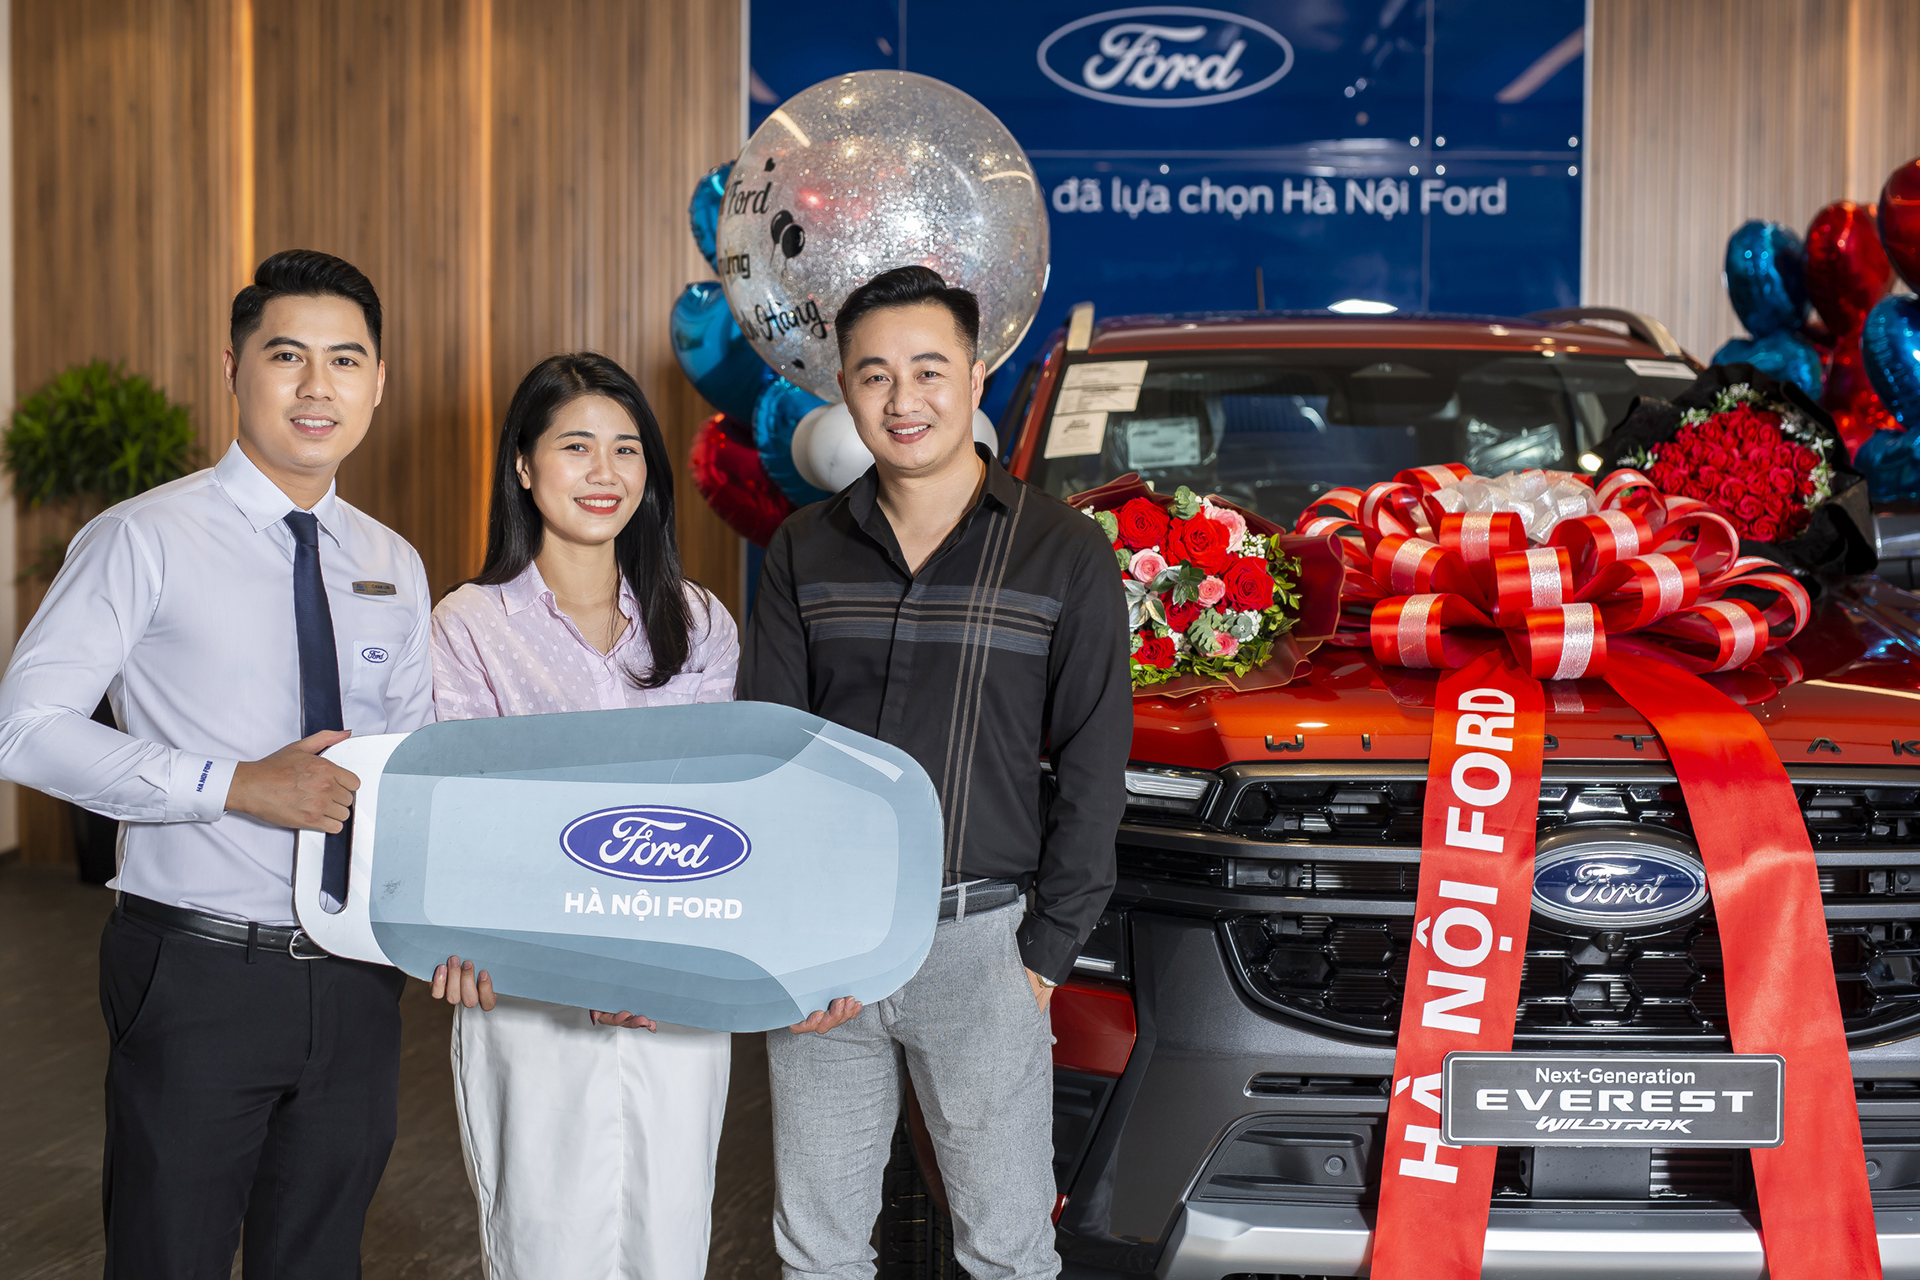 Các mẫu xe thế hệ mới của Ford đang dẫn đầu phân khúc giúp thương hiệu ô tô Mỹ có cú ngược dòng ấn tượng tại Việt Nam.